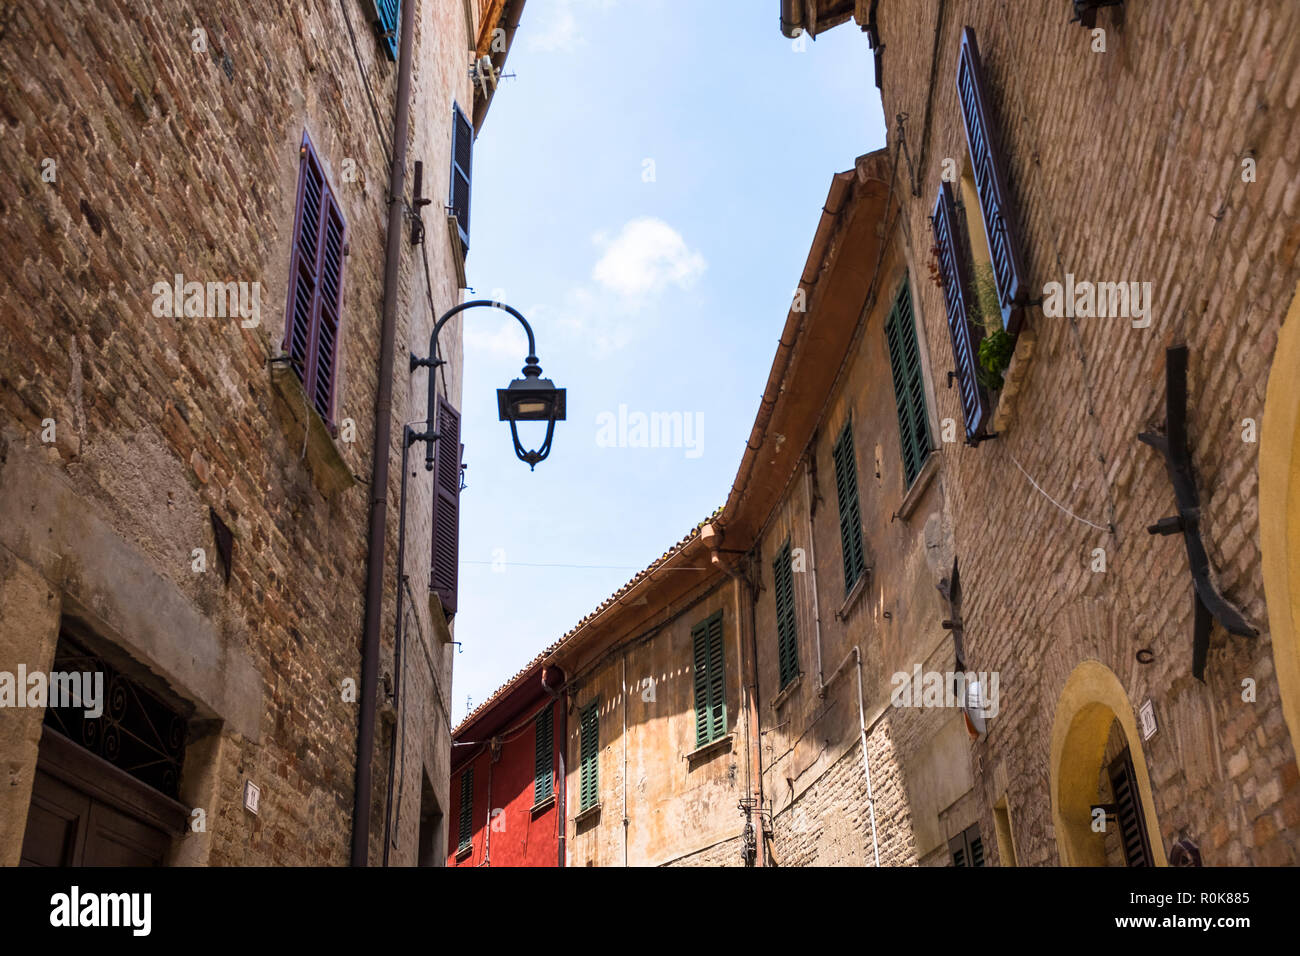 Des scènes et des détails dans le charmant village de Corinaldo, dans la région des Marches de l'Italie Banque D'Images